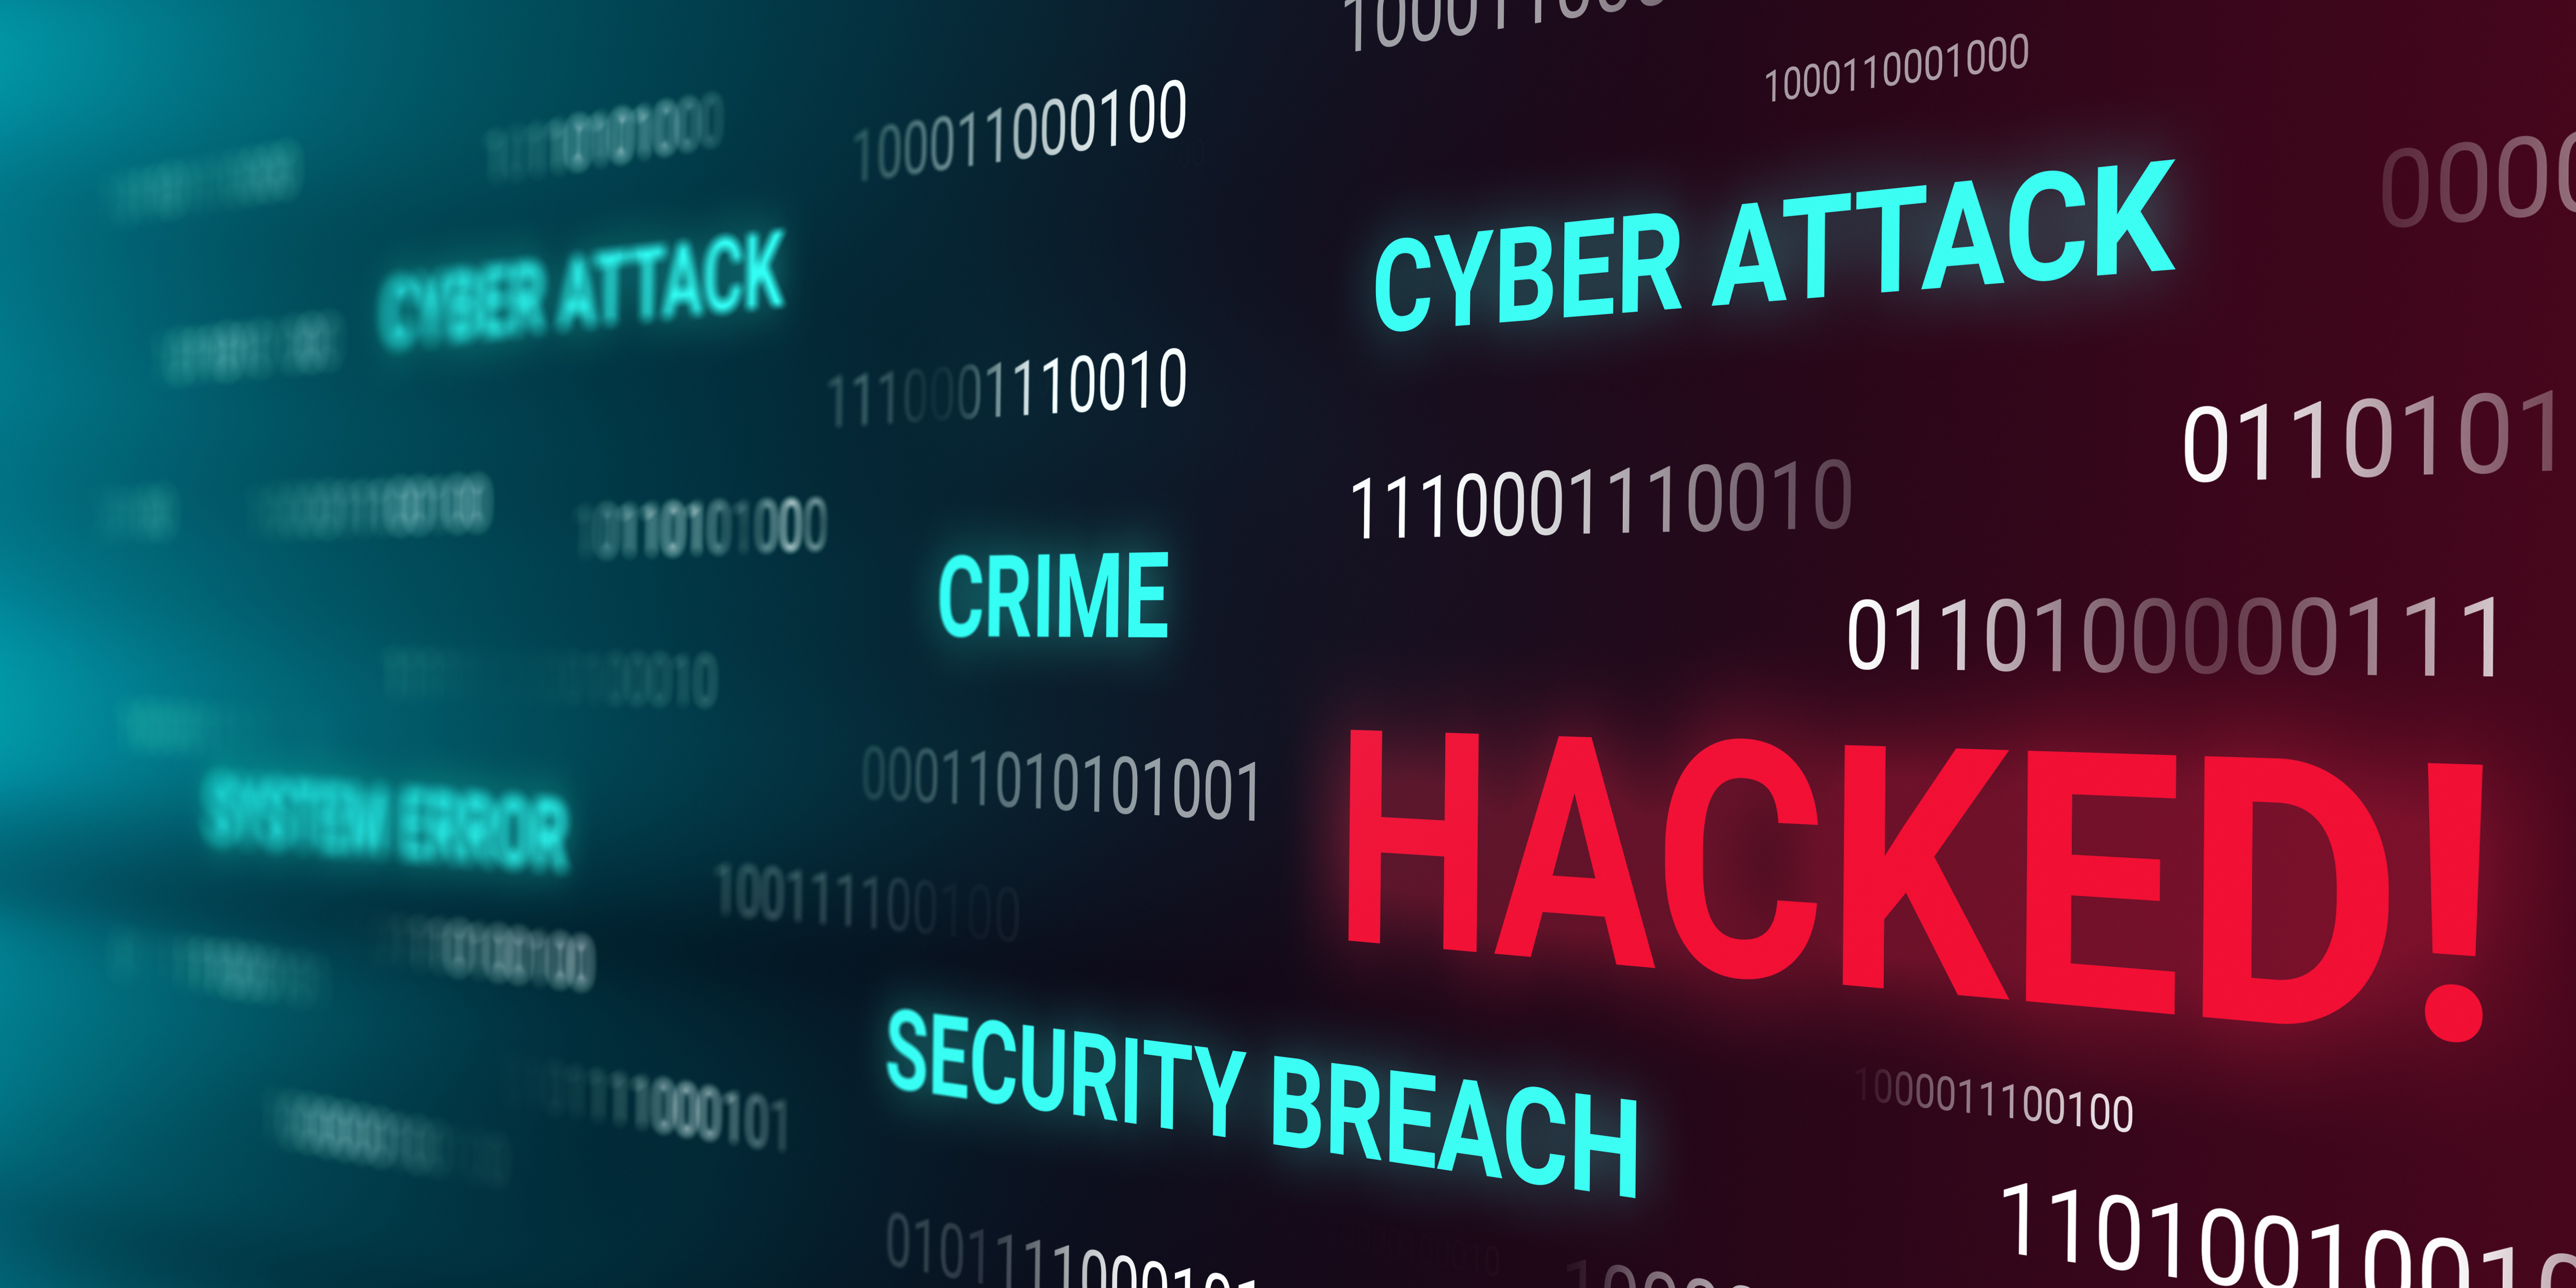 Fortaleciendo la seguridad: Explorando el Ethical Hacking como herramienta de prevención de brechas